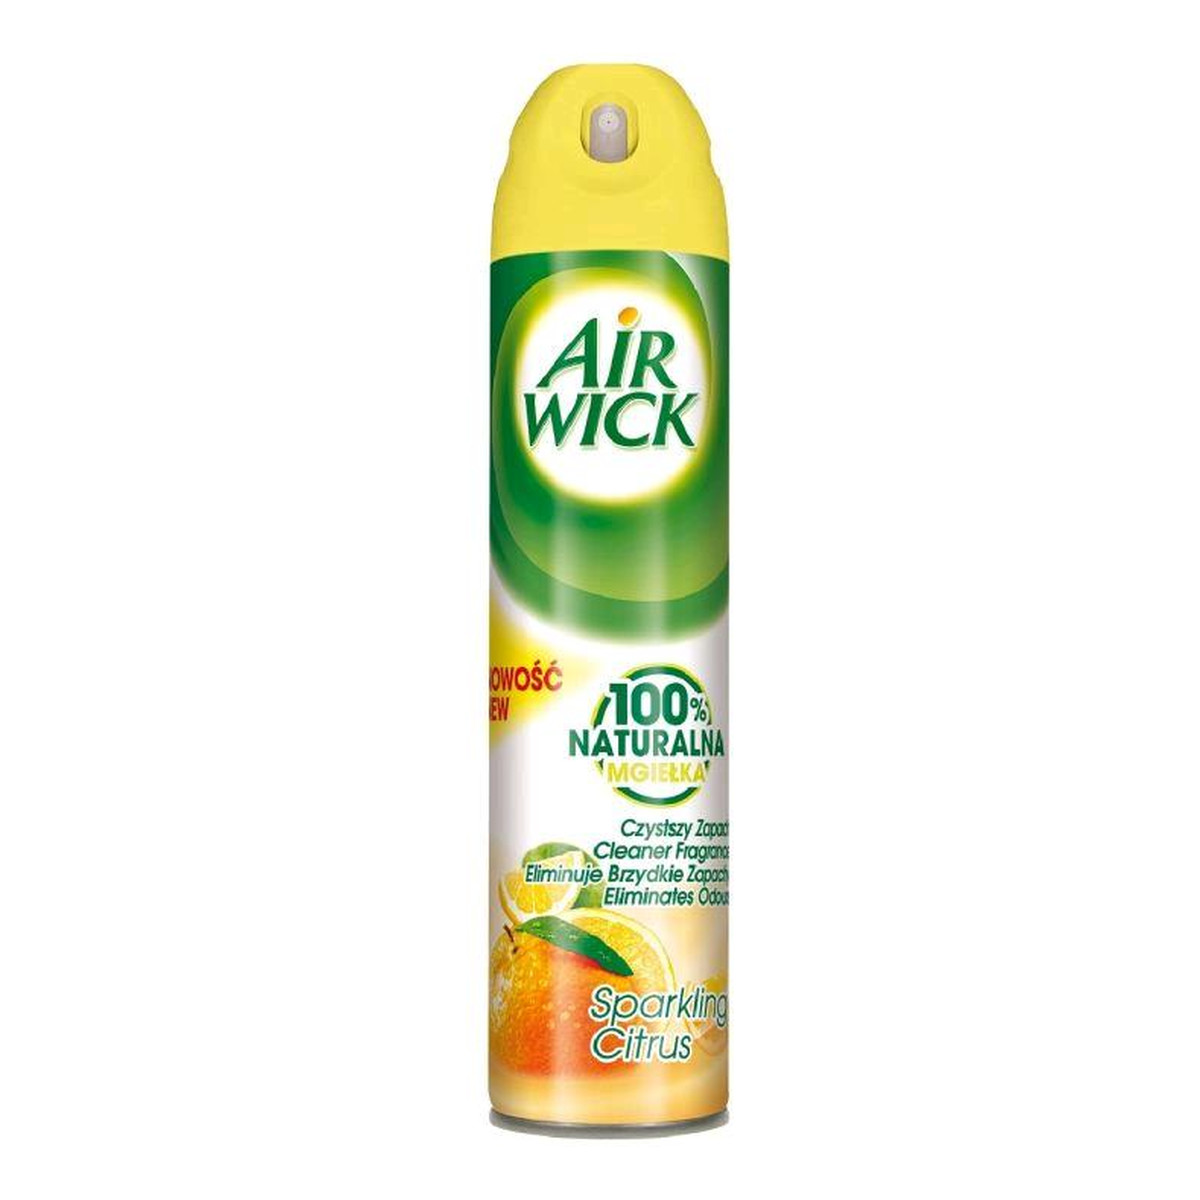 Air Wick 100% Naturalna Mgiełka odświeżacz powietrza Citrus 240ml